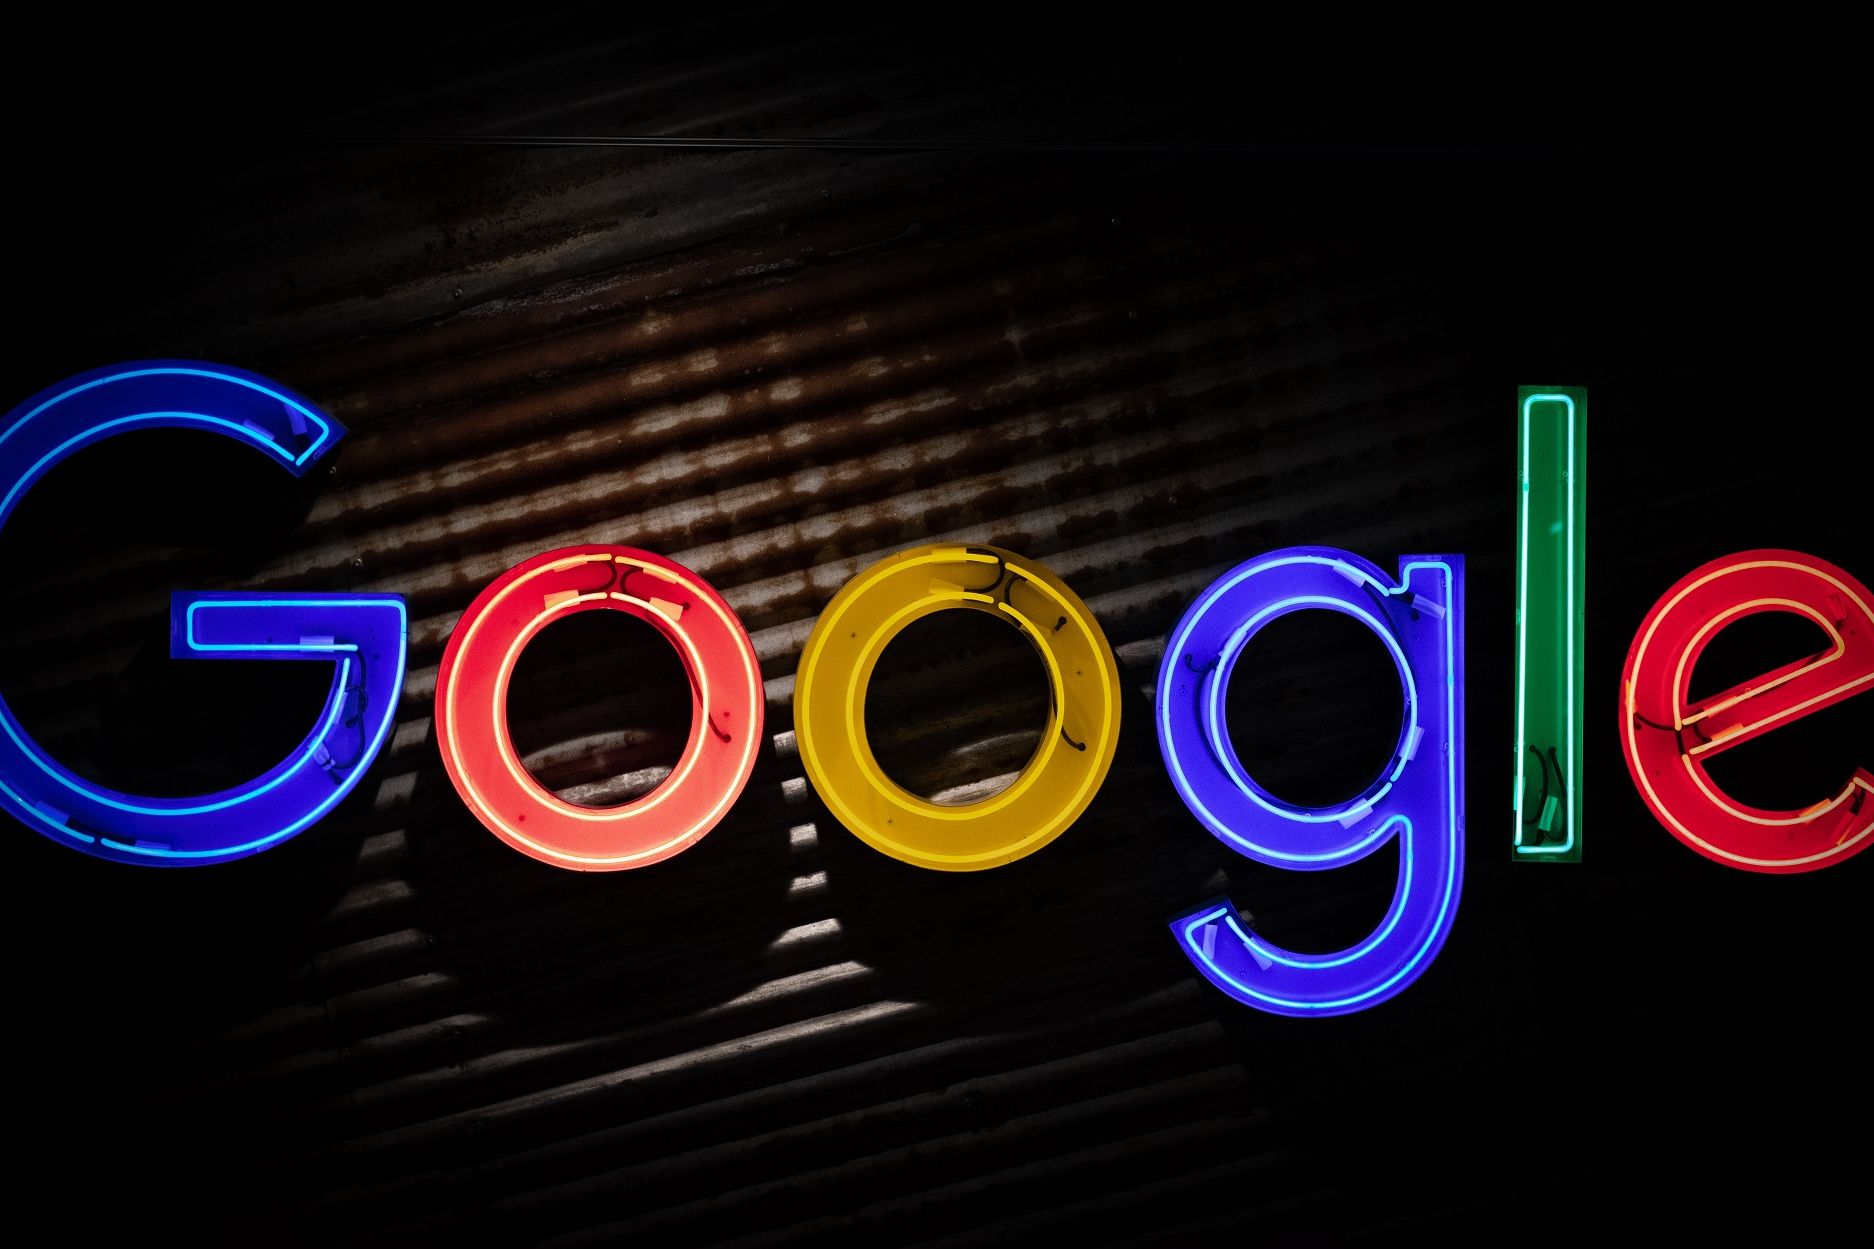 Kemenlu AS Luncuran Kemitraan dengan Google di Indonesia, Ini Programnya